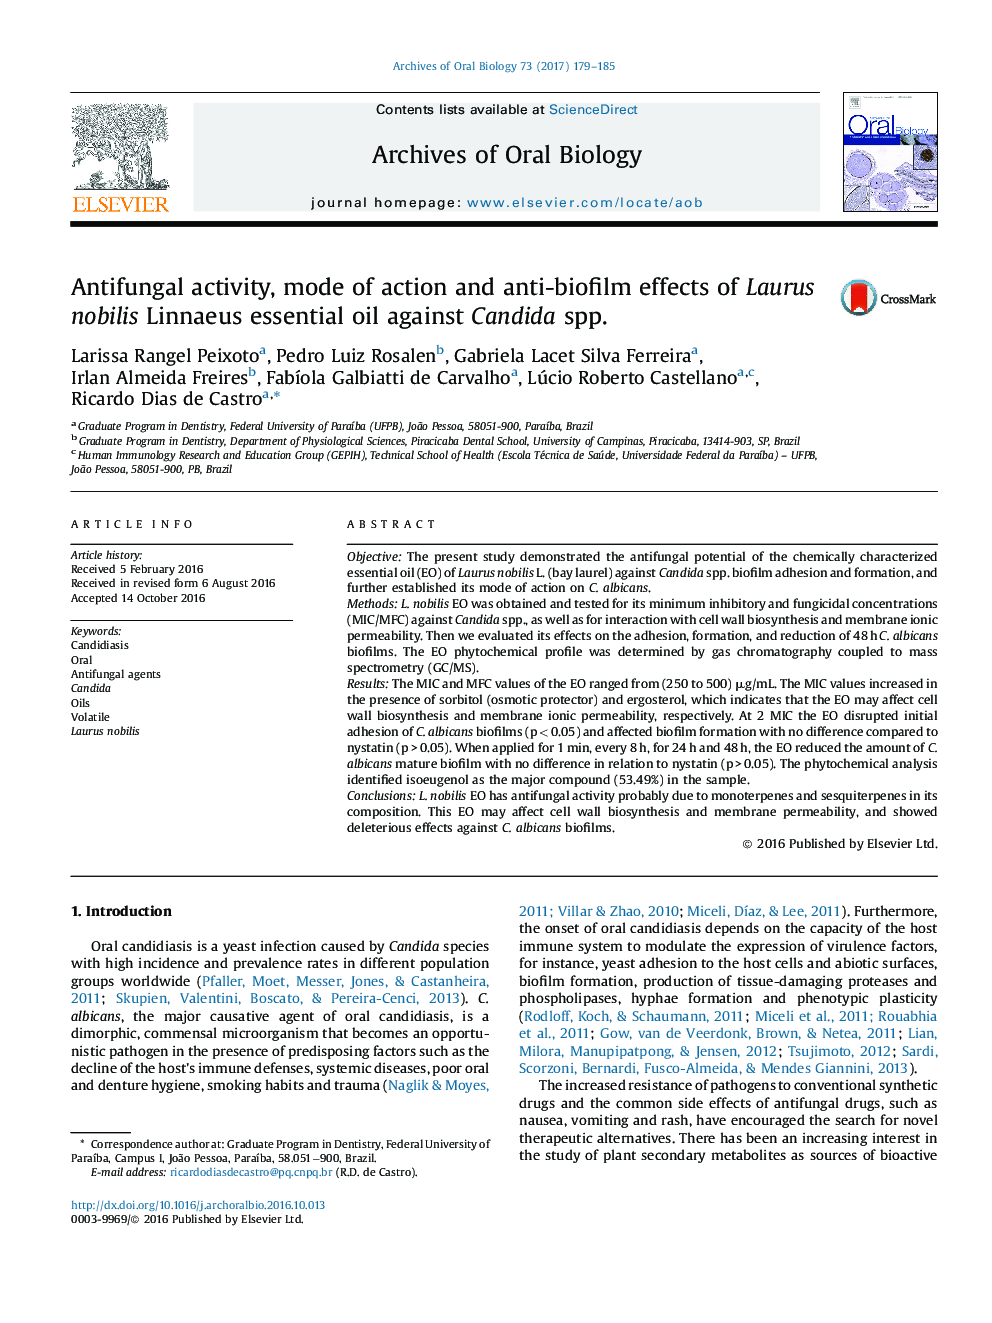 Antifungal activity, mode of action and anti-biofilm effects of Laurus nobilis Linnaeus essential oil against Candida spp.